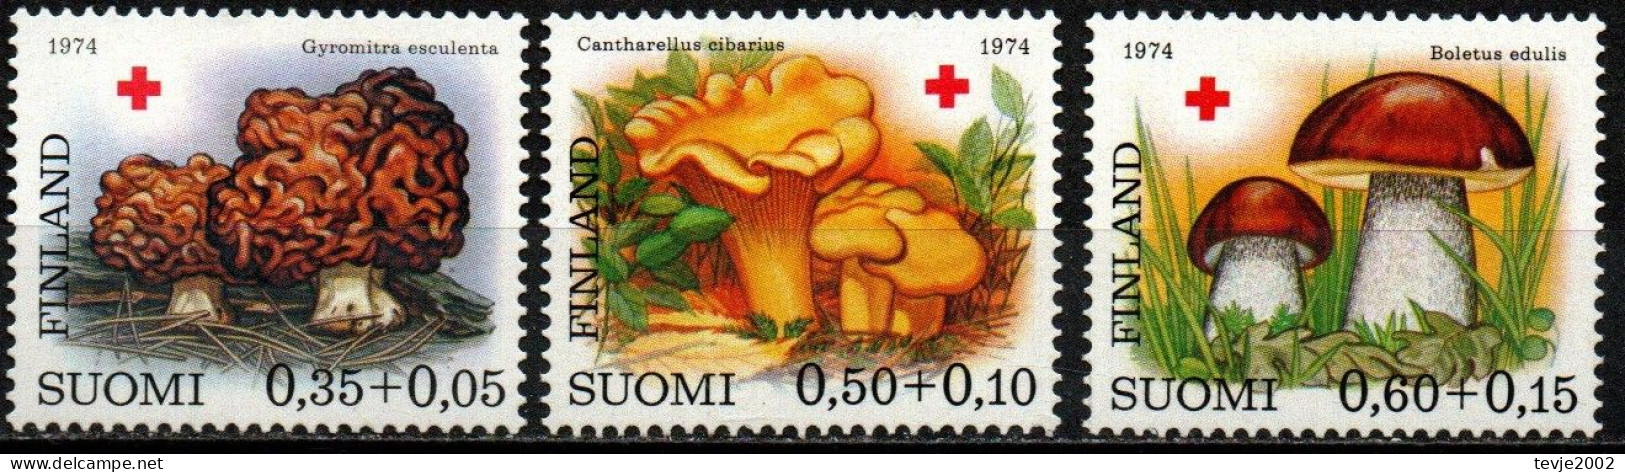 Finnland Suomi 1974 - Mi.Nr. 753 - 755 - Postfrisch MNH - Pilze Mushrooms - Hongos